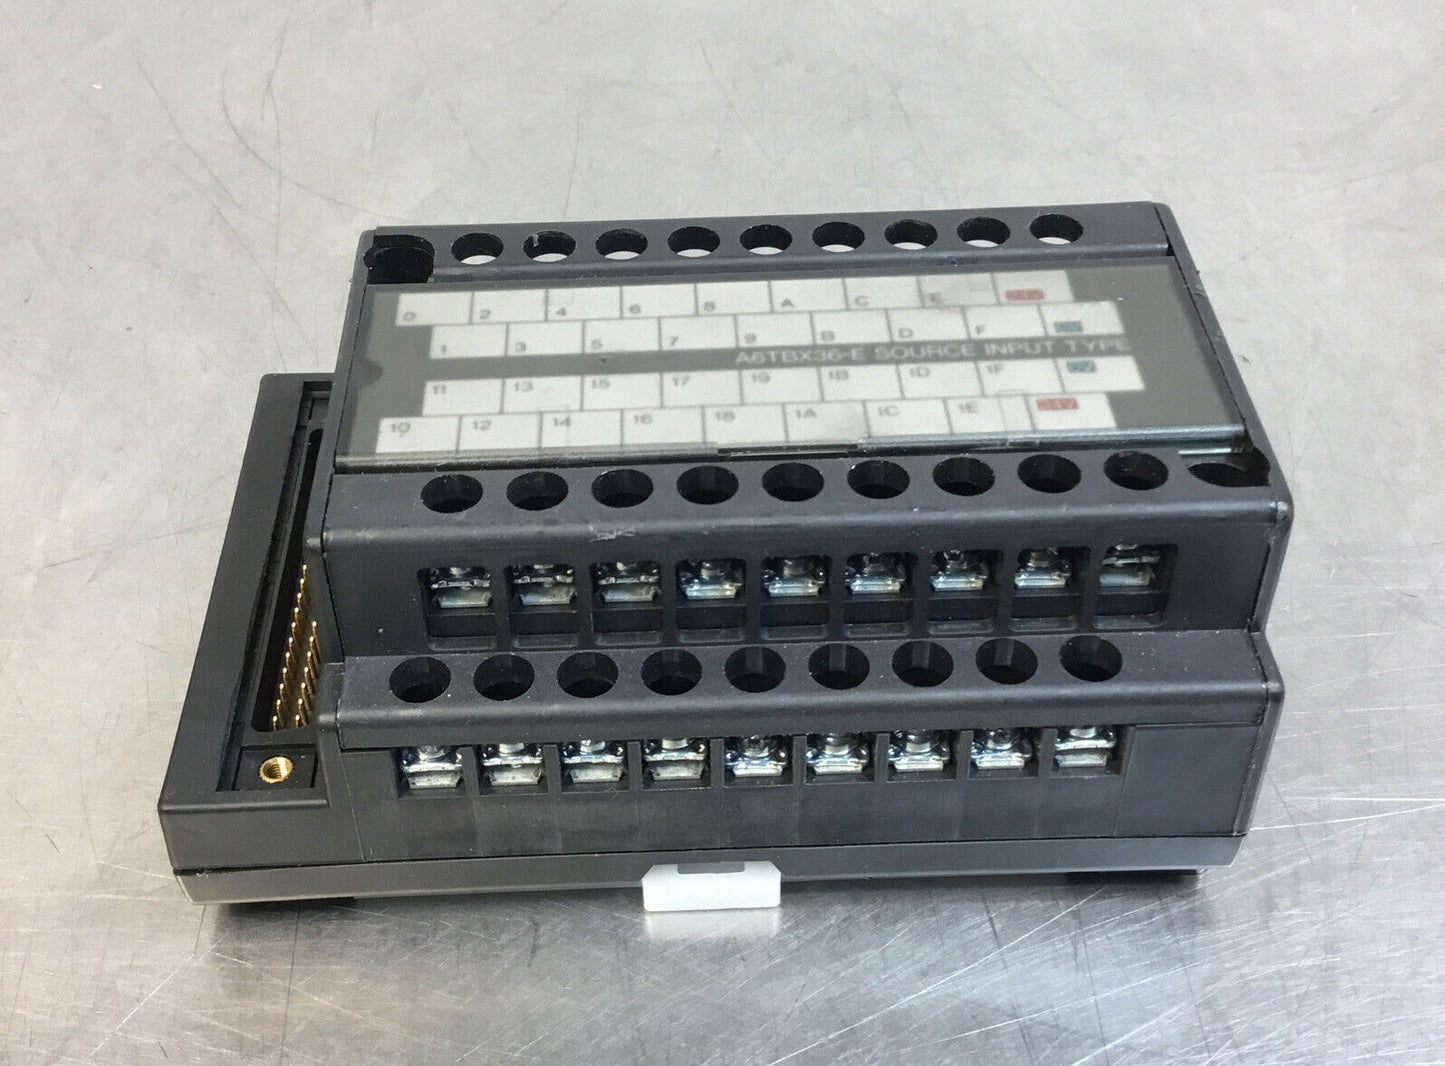 Mitsubishi A6TBX36-E   PLC Terminal Board    4H